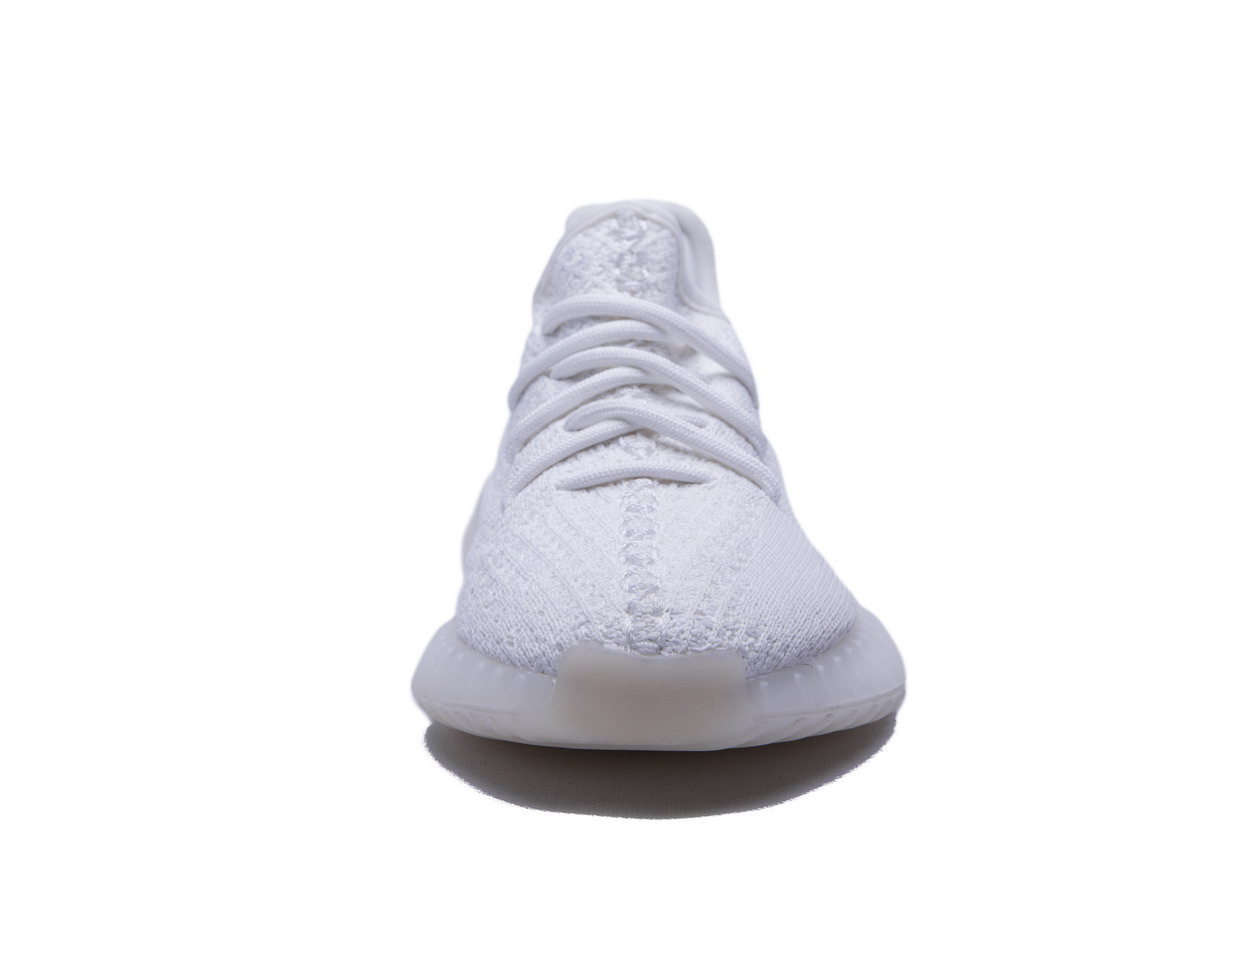 Adidas Originals Yeezy Boost 350 V2 Cream White Cp9366 17 - kickbulk.co